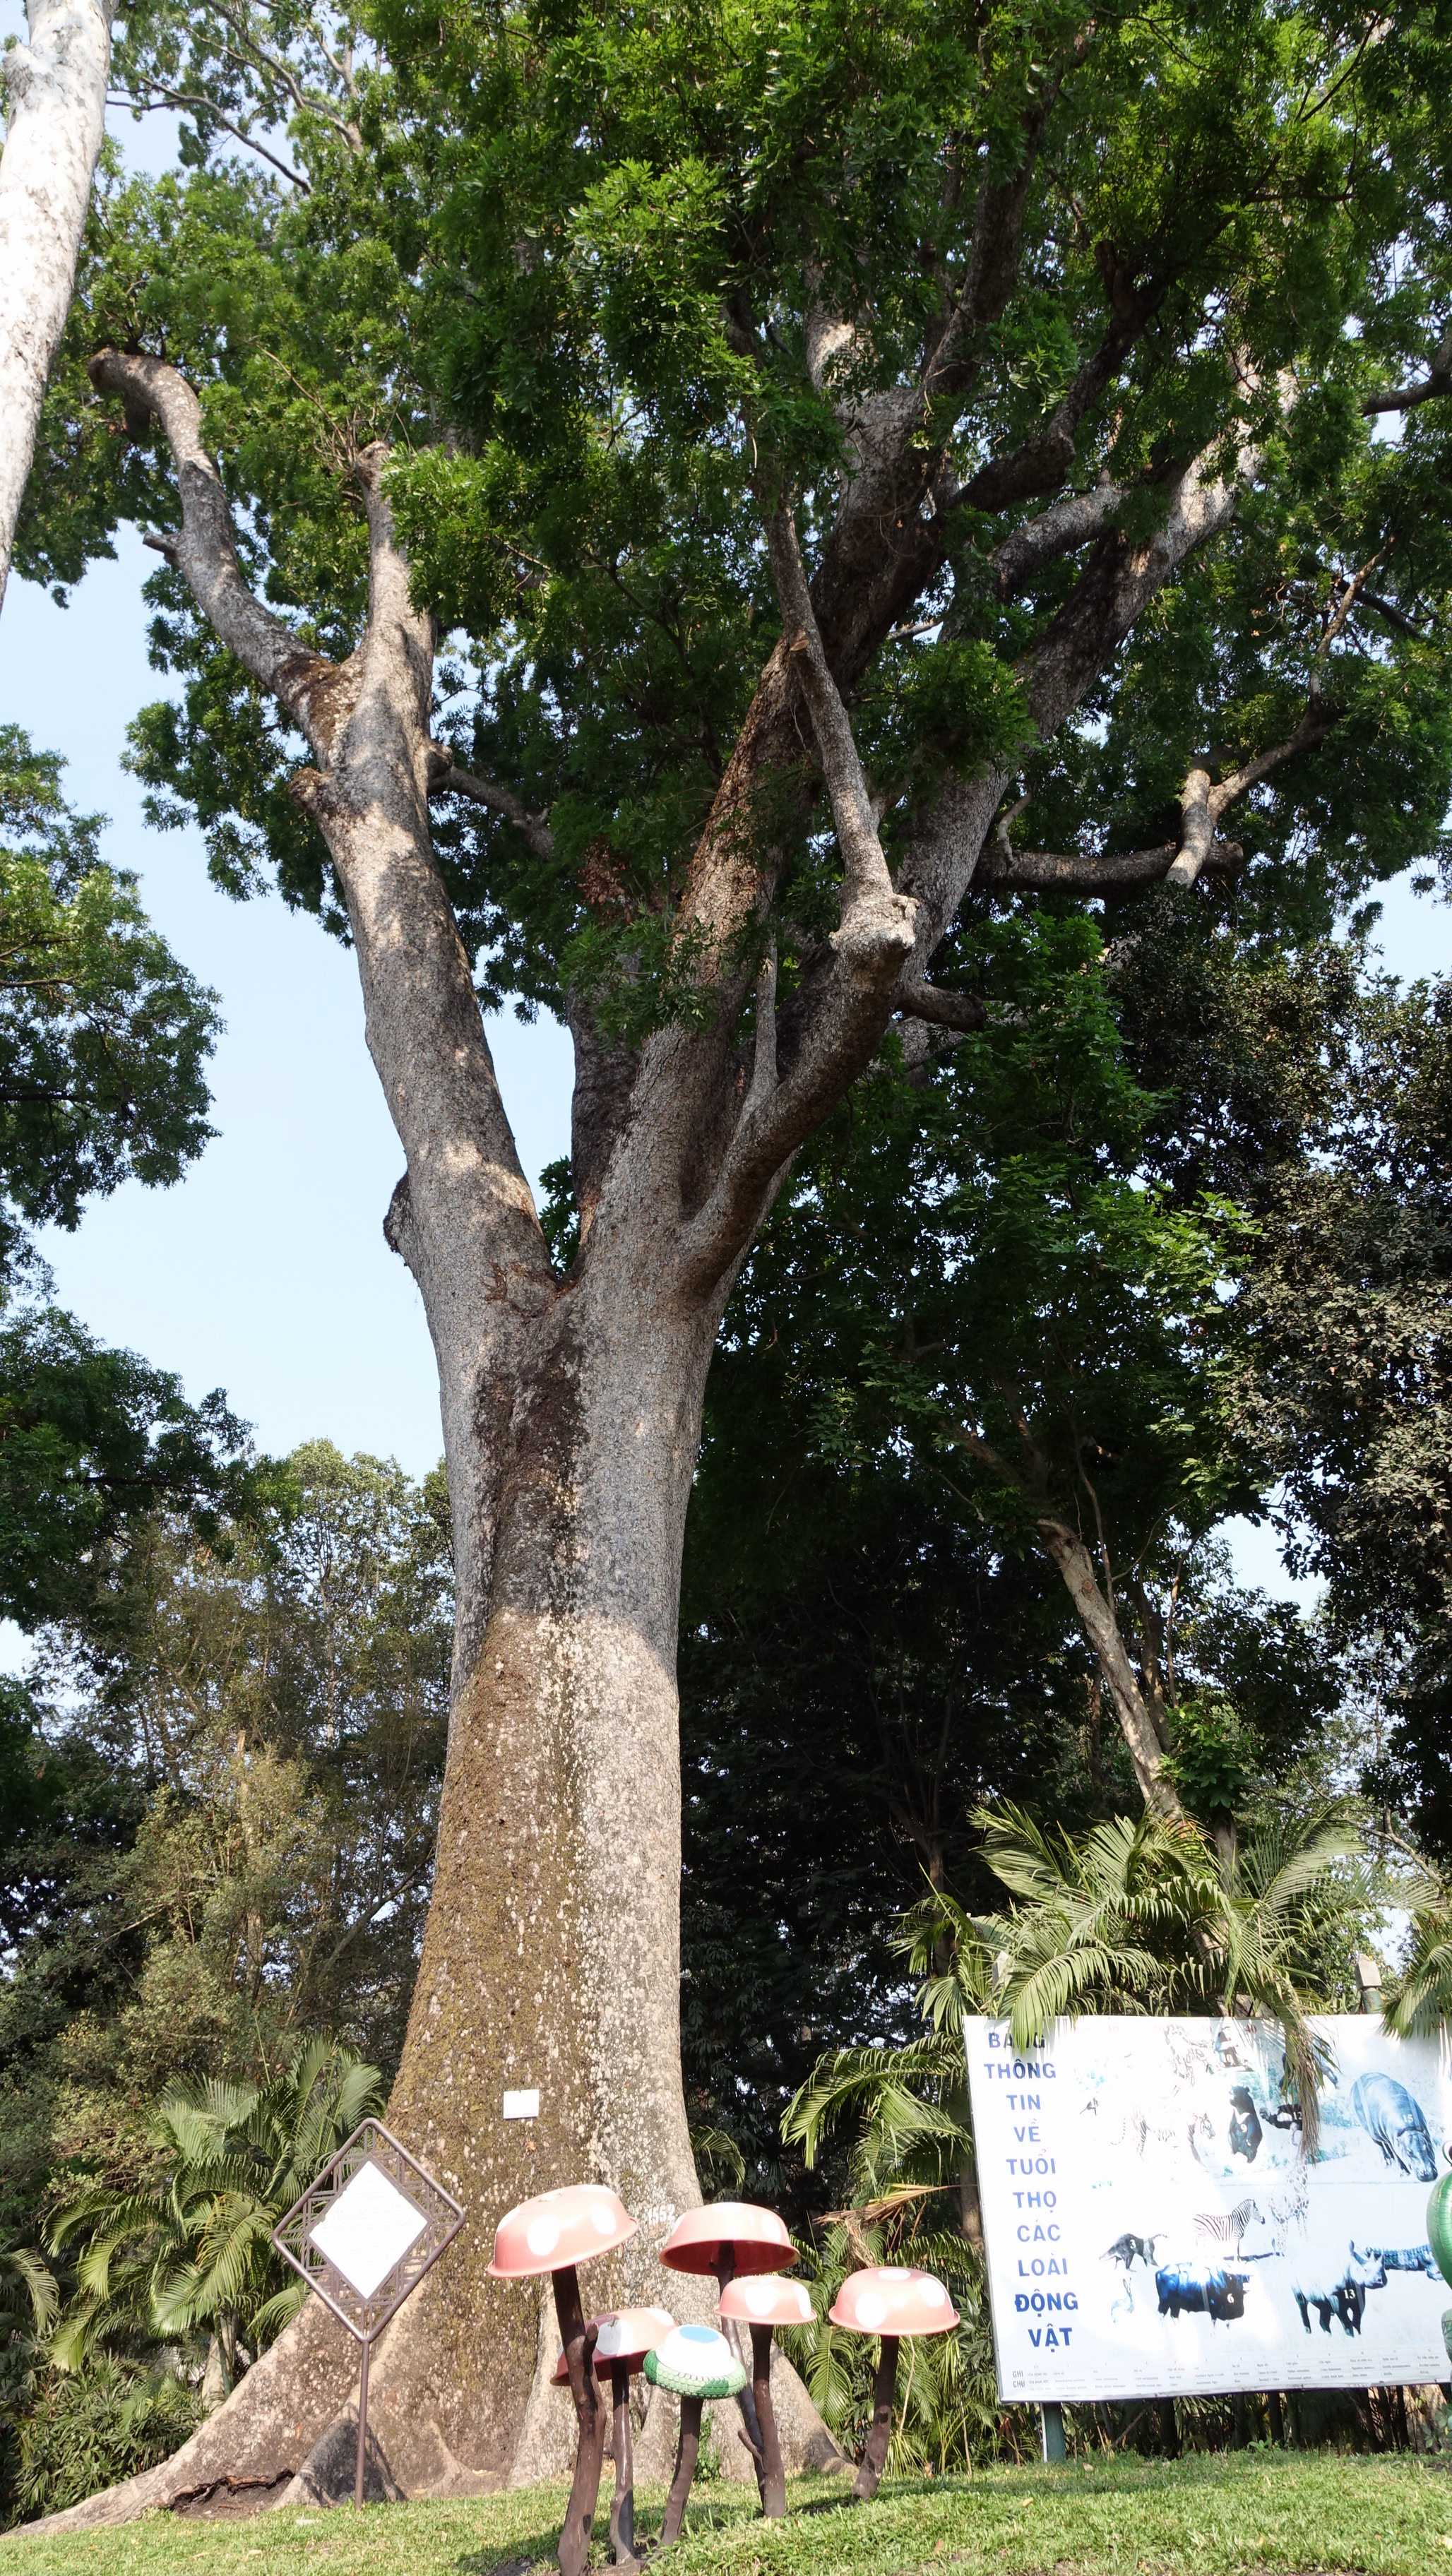 Cây cao hơn 50 m, đường kính thân cây gần 4 m, với tuổi đời xấp xỉ 150 năm, bằng đúng tuổi Thảo cầm viên